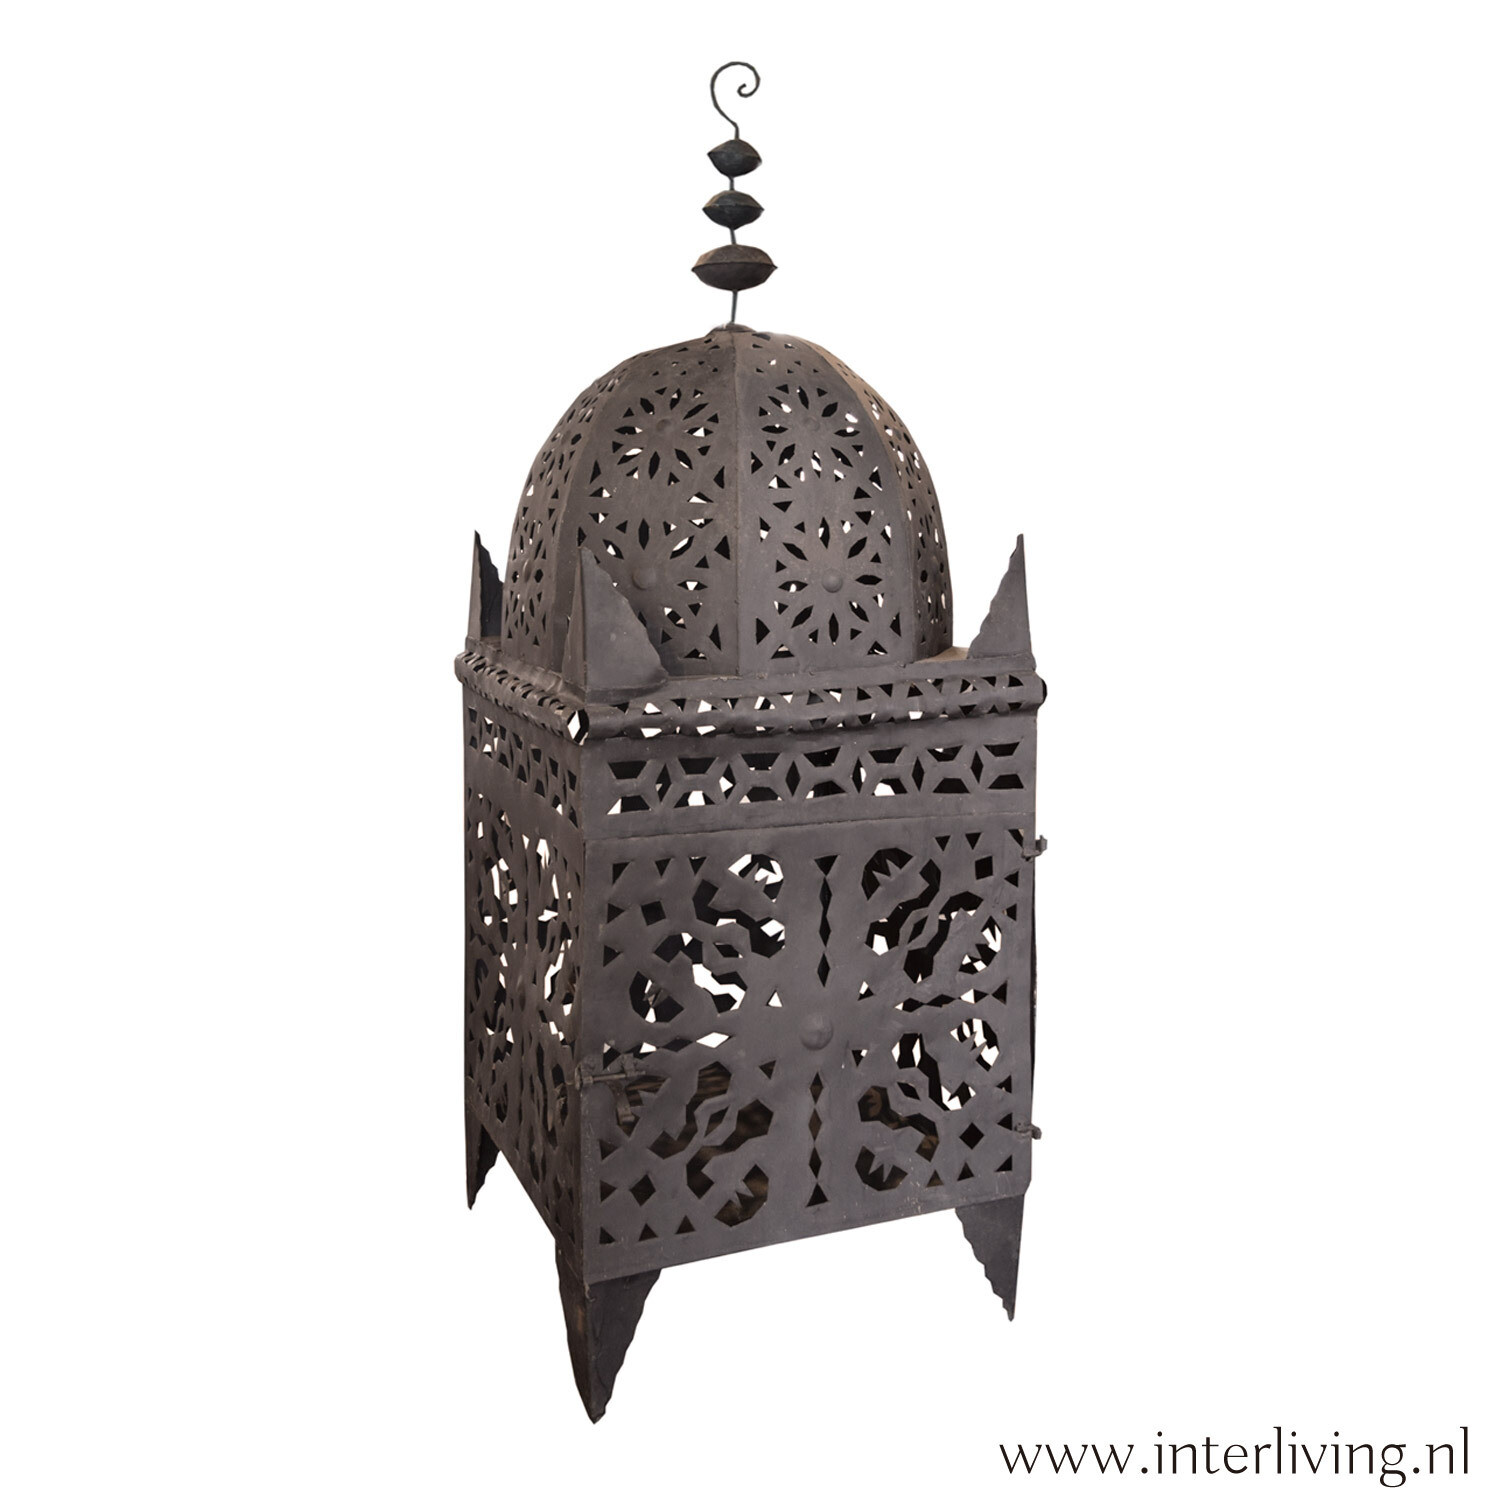 Marokkaanse grote lantaarn - zwart metaal - handgemaakt uit Marrakesh -  Extra large - 100 cm